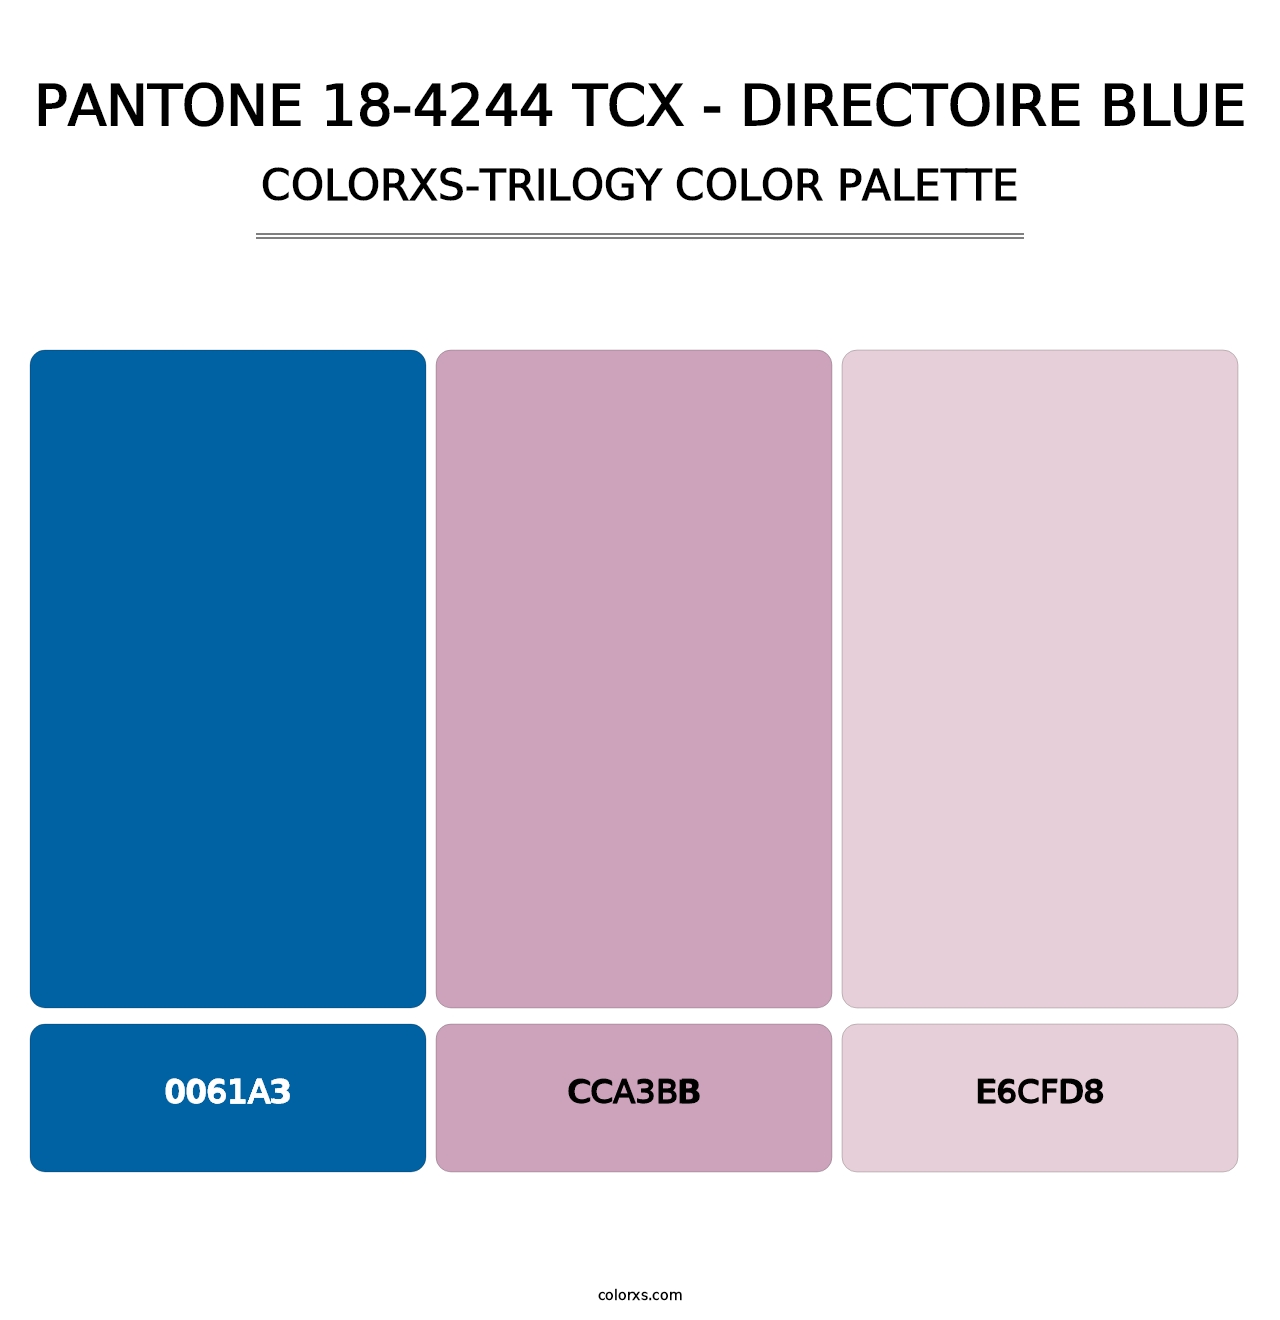 PANTONE 18-4244 TCX - Directoire Blue - Colorxs Trilogy Palette